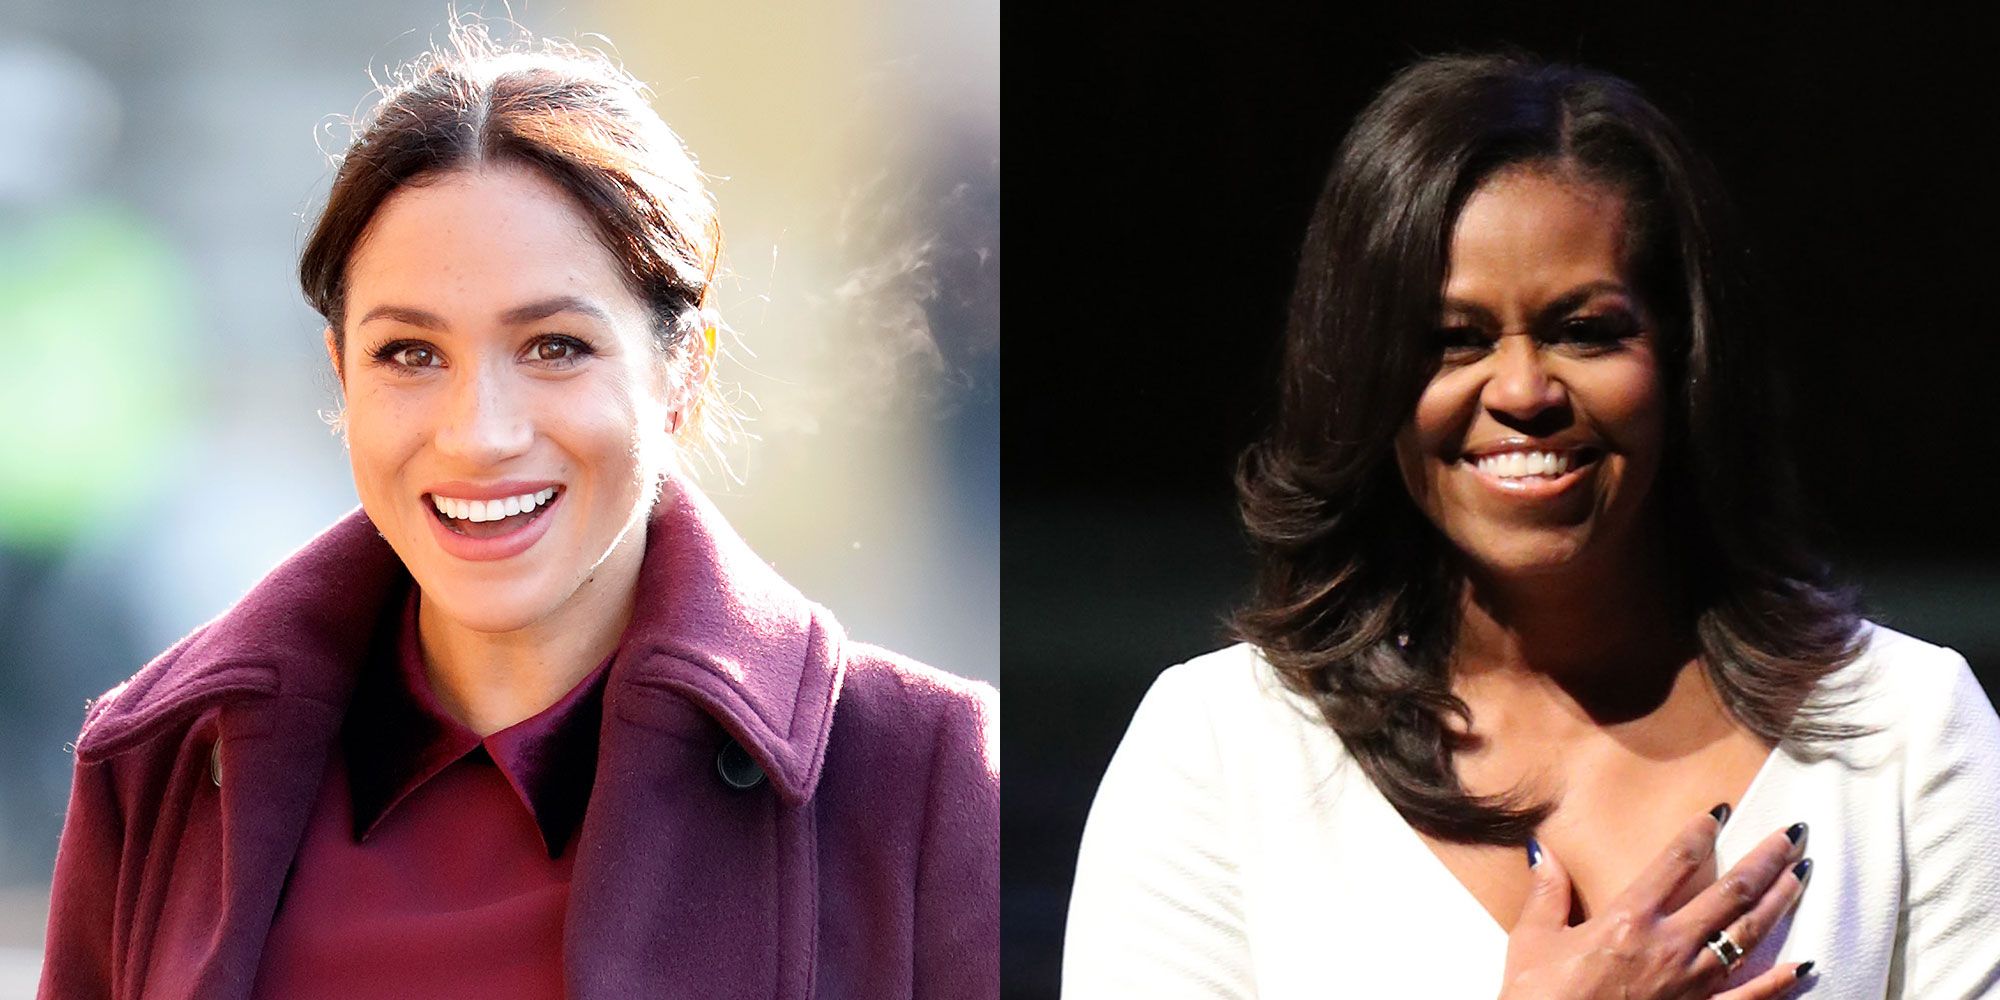 Michelle Obama espera que Meghan Markle y el príncipe Harry encuentren el cierre y el perdón tras la entrevista con Oprah